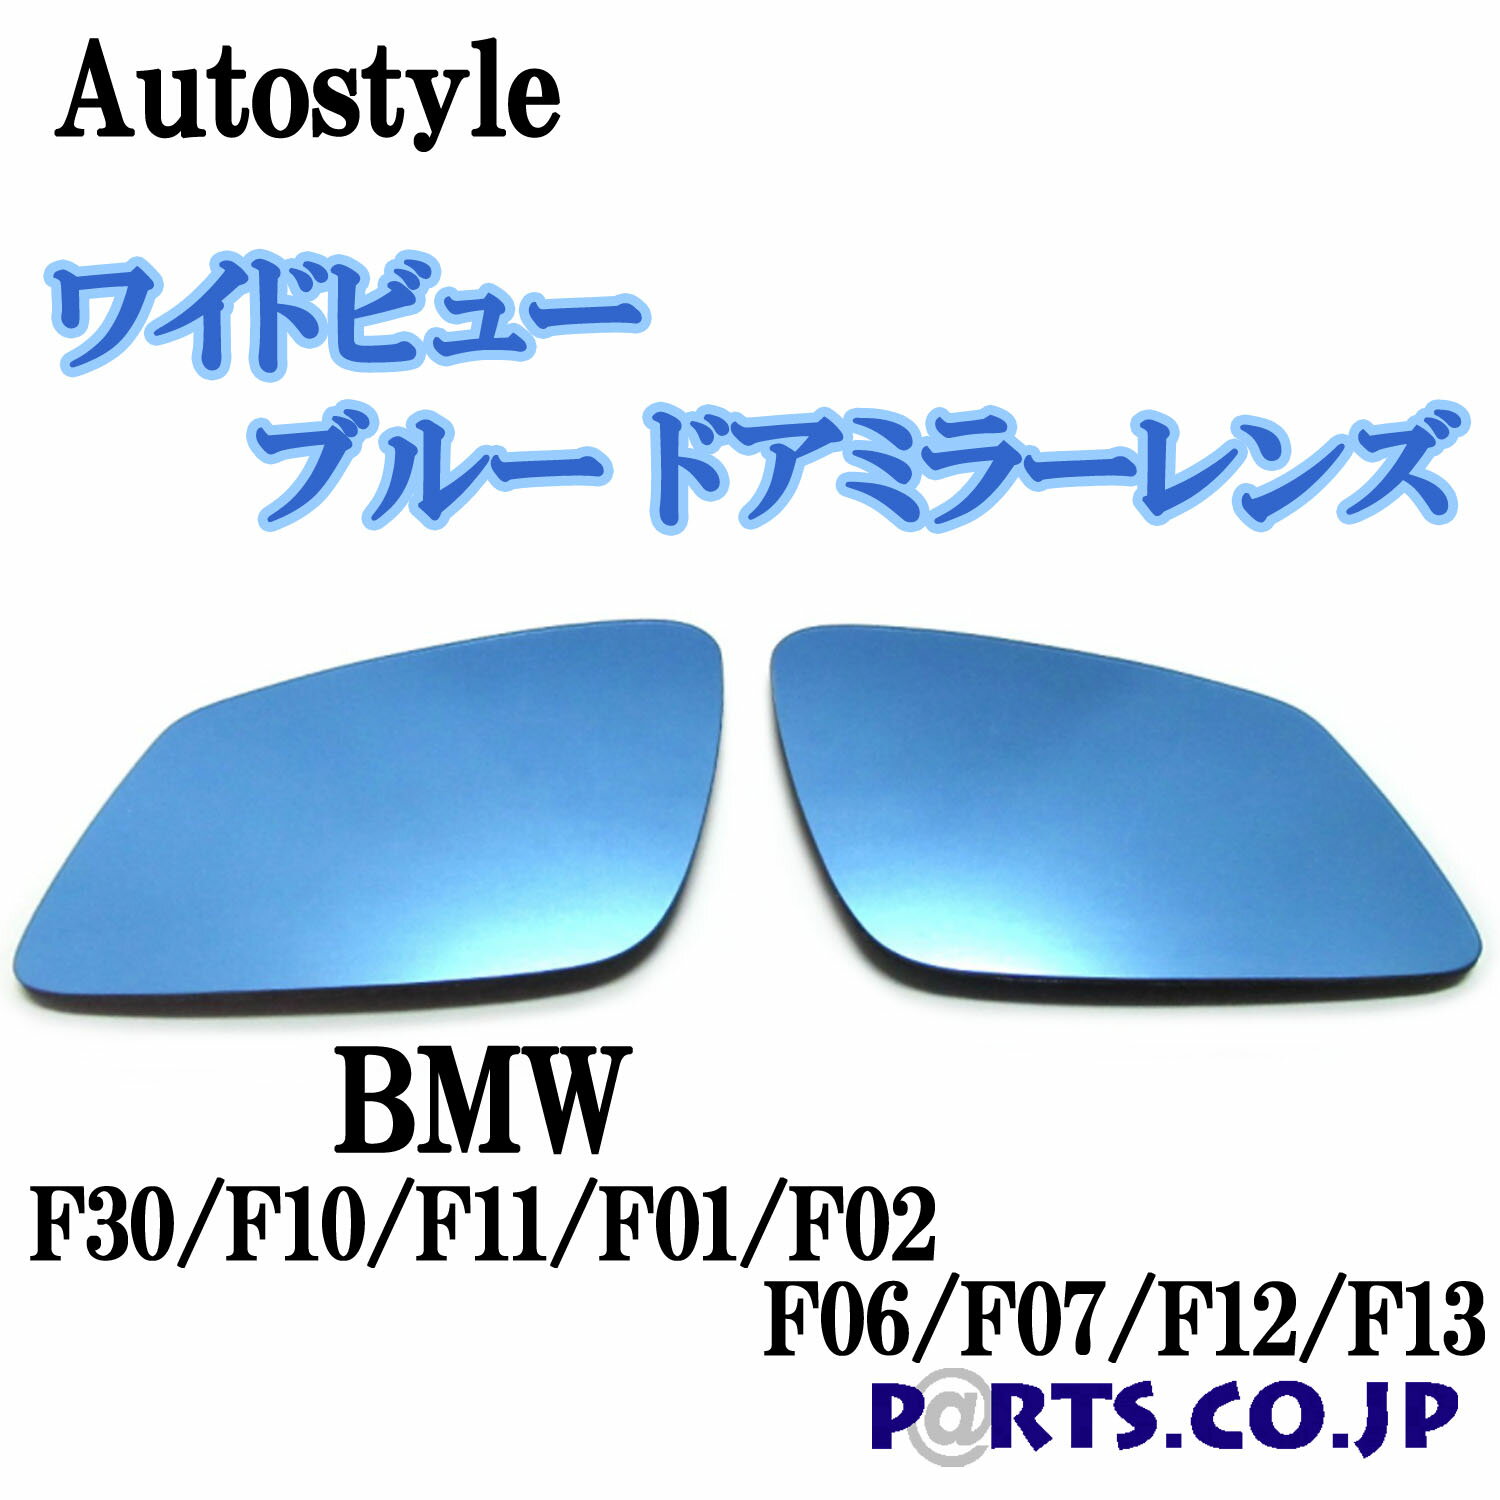 外装・エアロパーツ, ドアミラー Autostyle BMW F30F10F11F01F02F06F07F12F13 